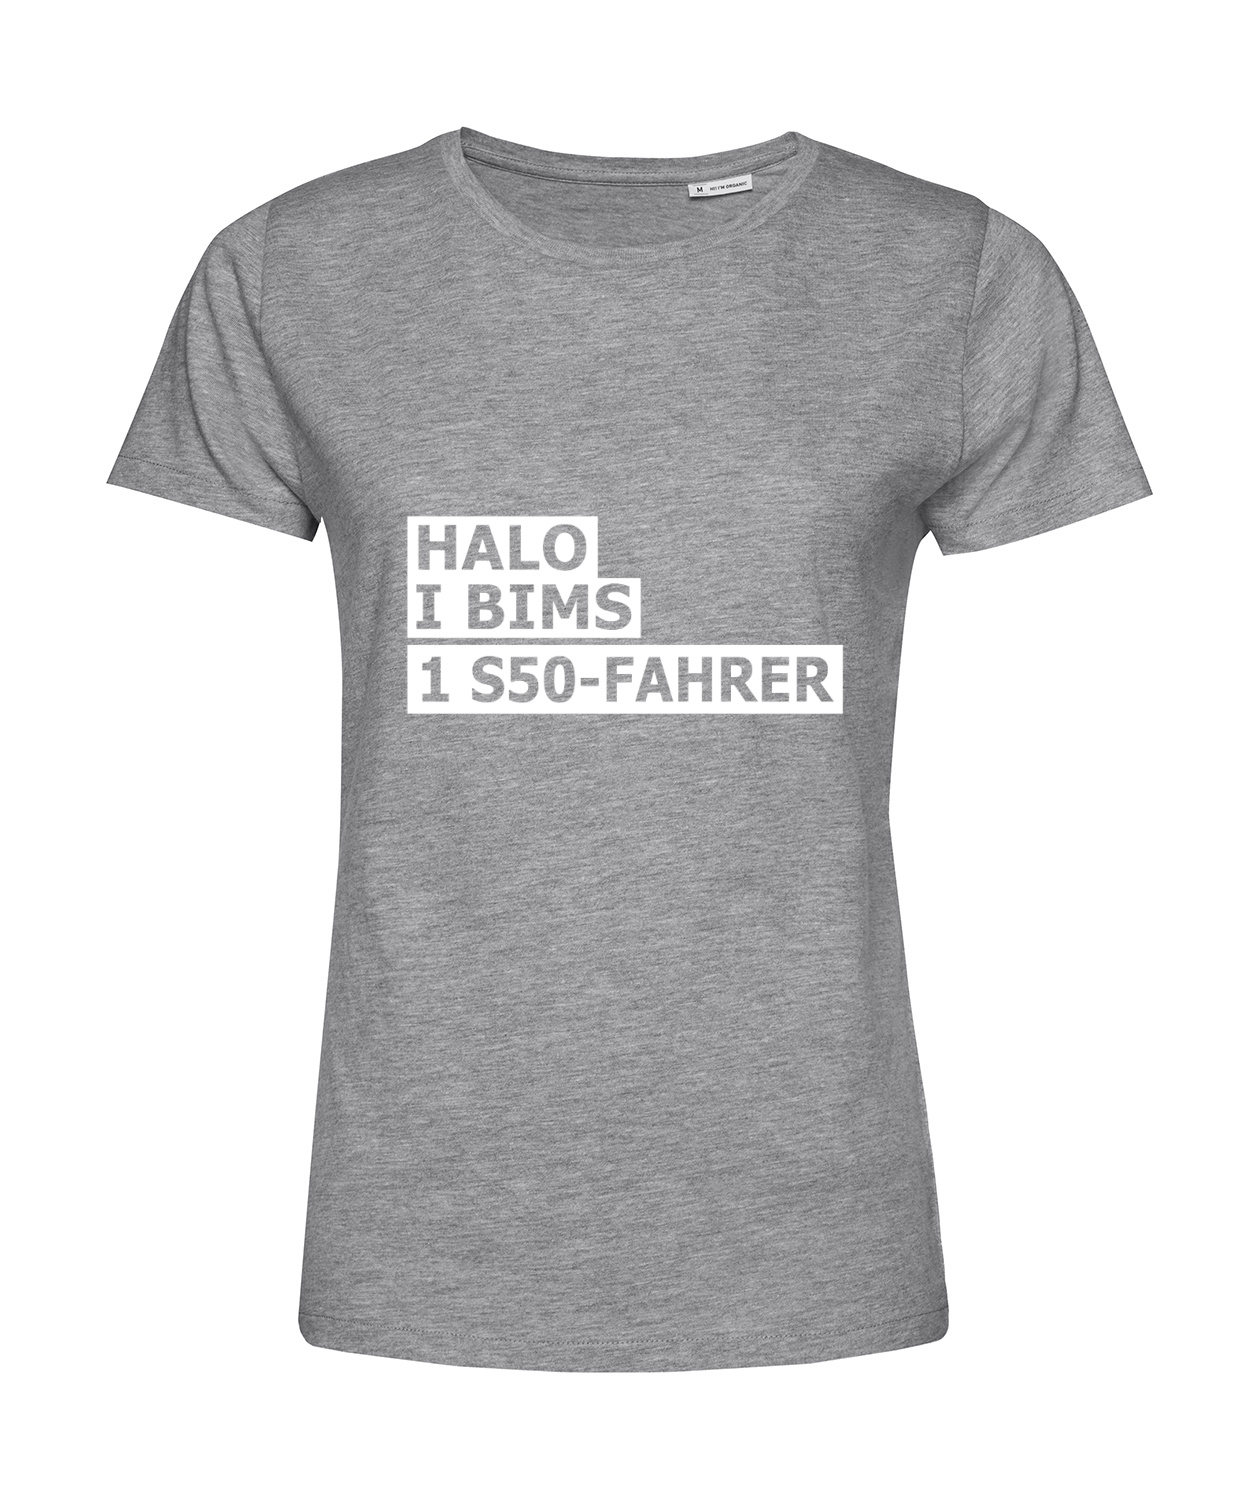 Nachhaltiges T-Shirt Damen 2Takter - Halo I bims 1 S50-Fahrer